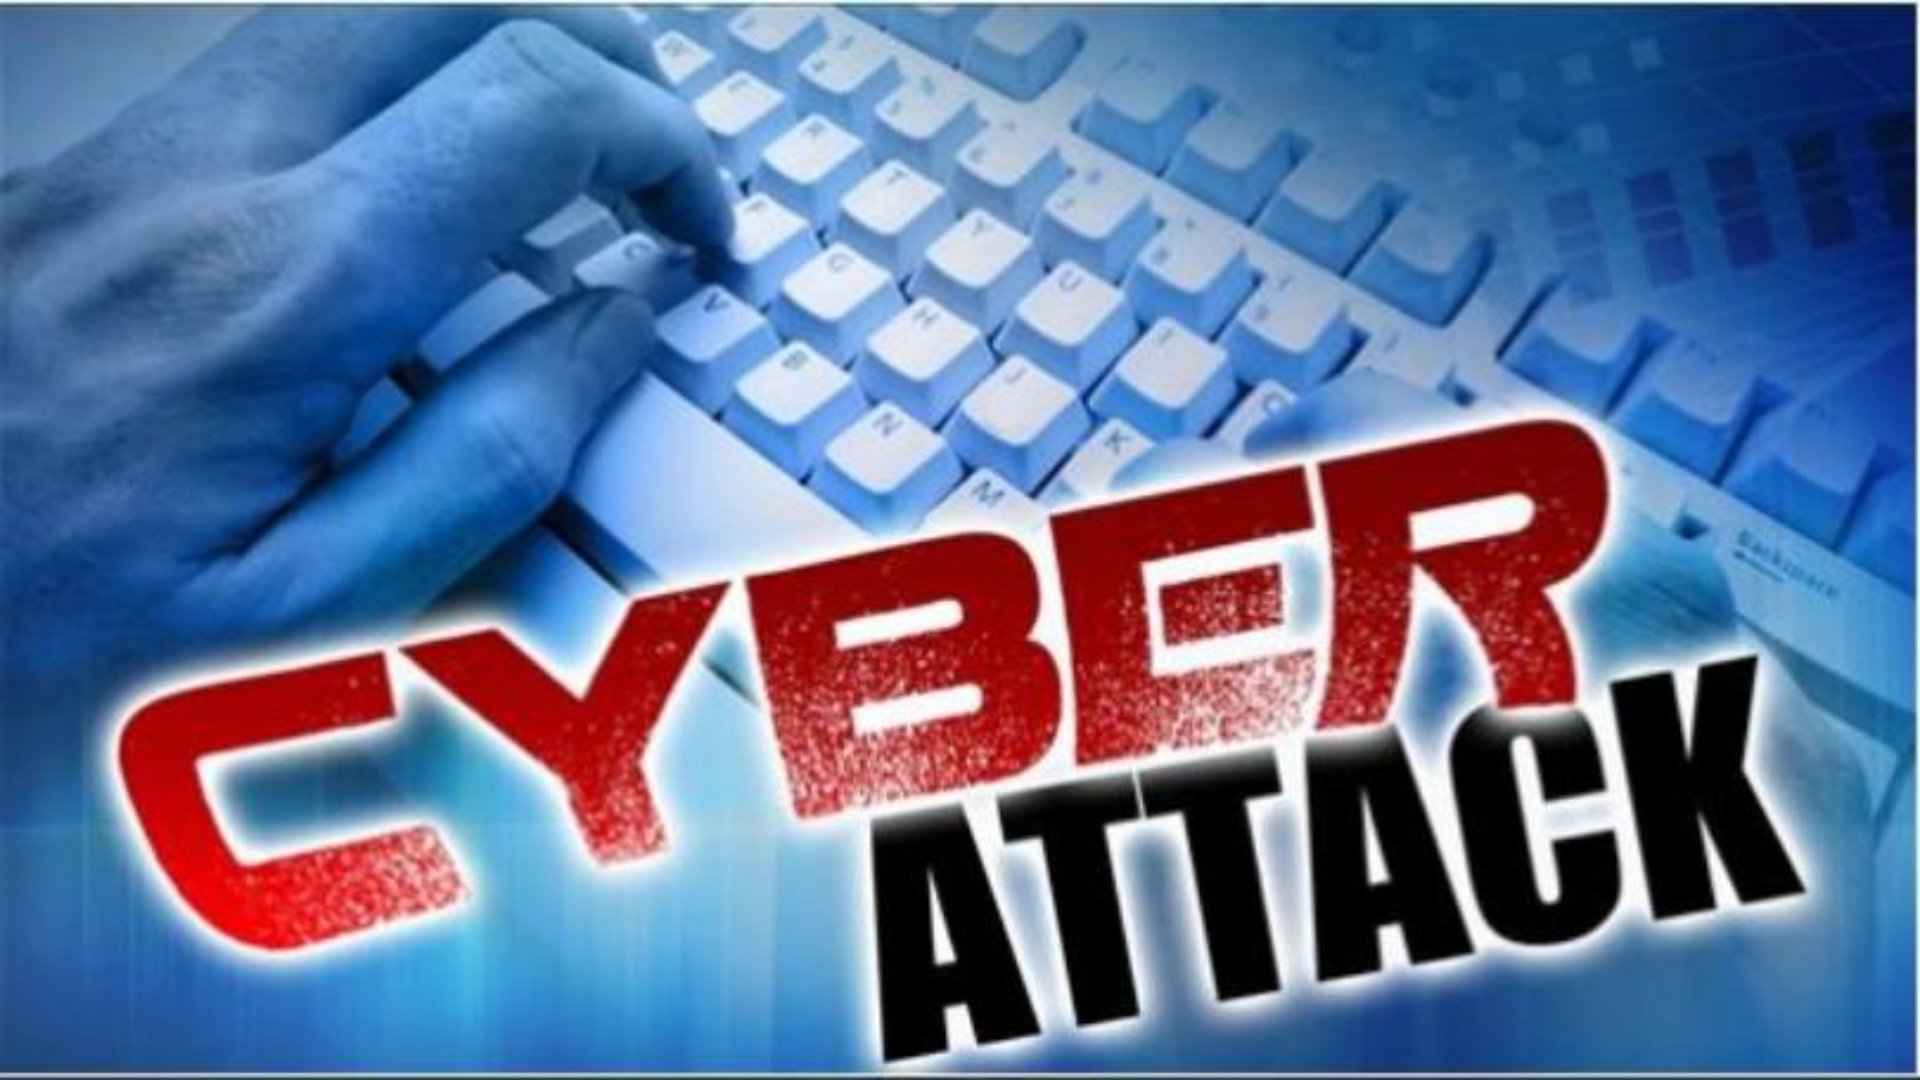 cyber attack p engertian.jpg